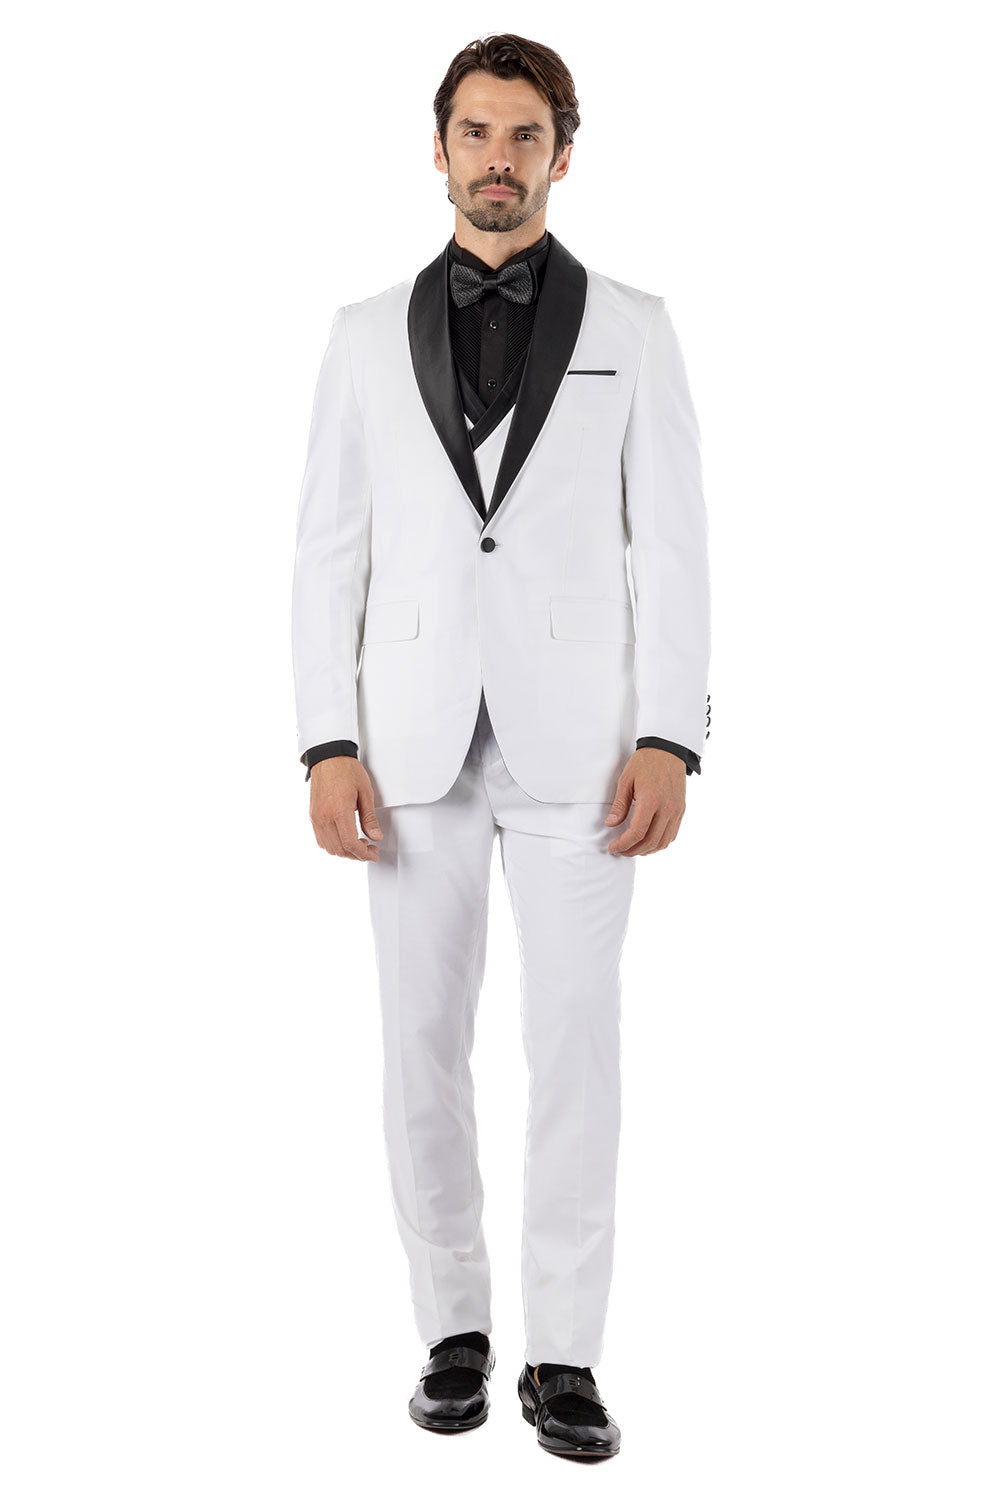 BARABAS Men's Solid Color Shawl Lapel Suit Vest Set 4TU04 White